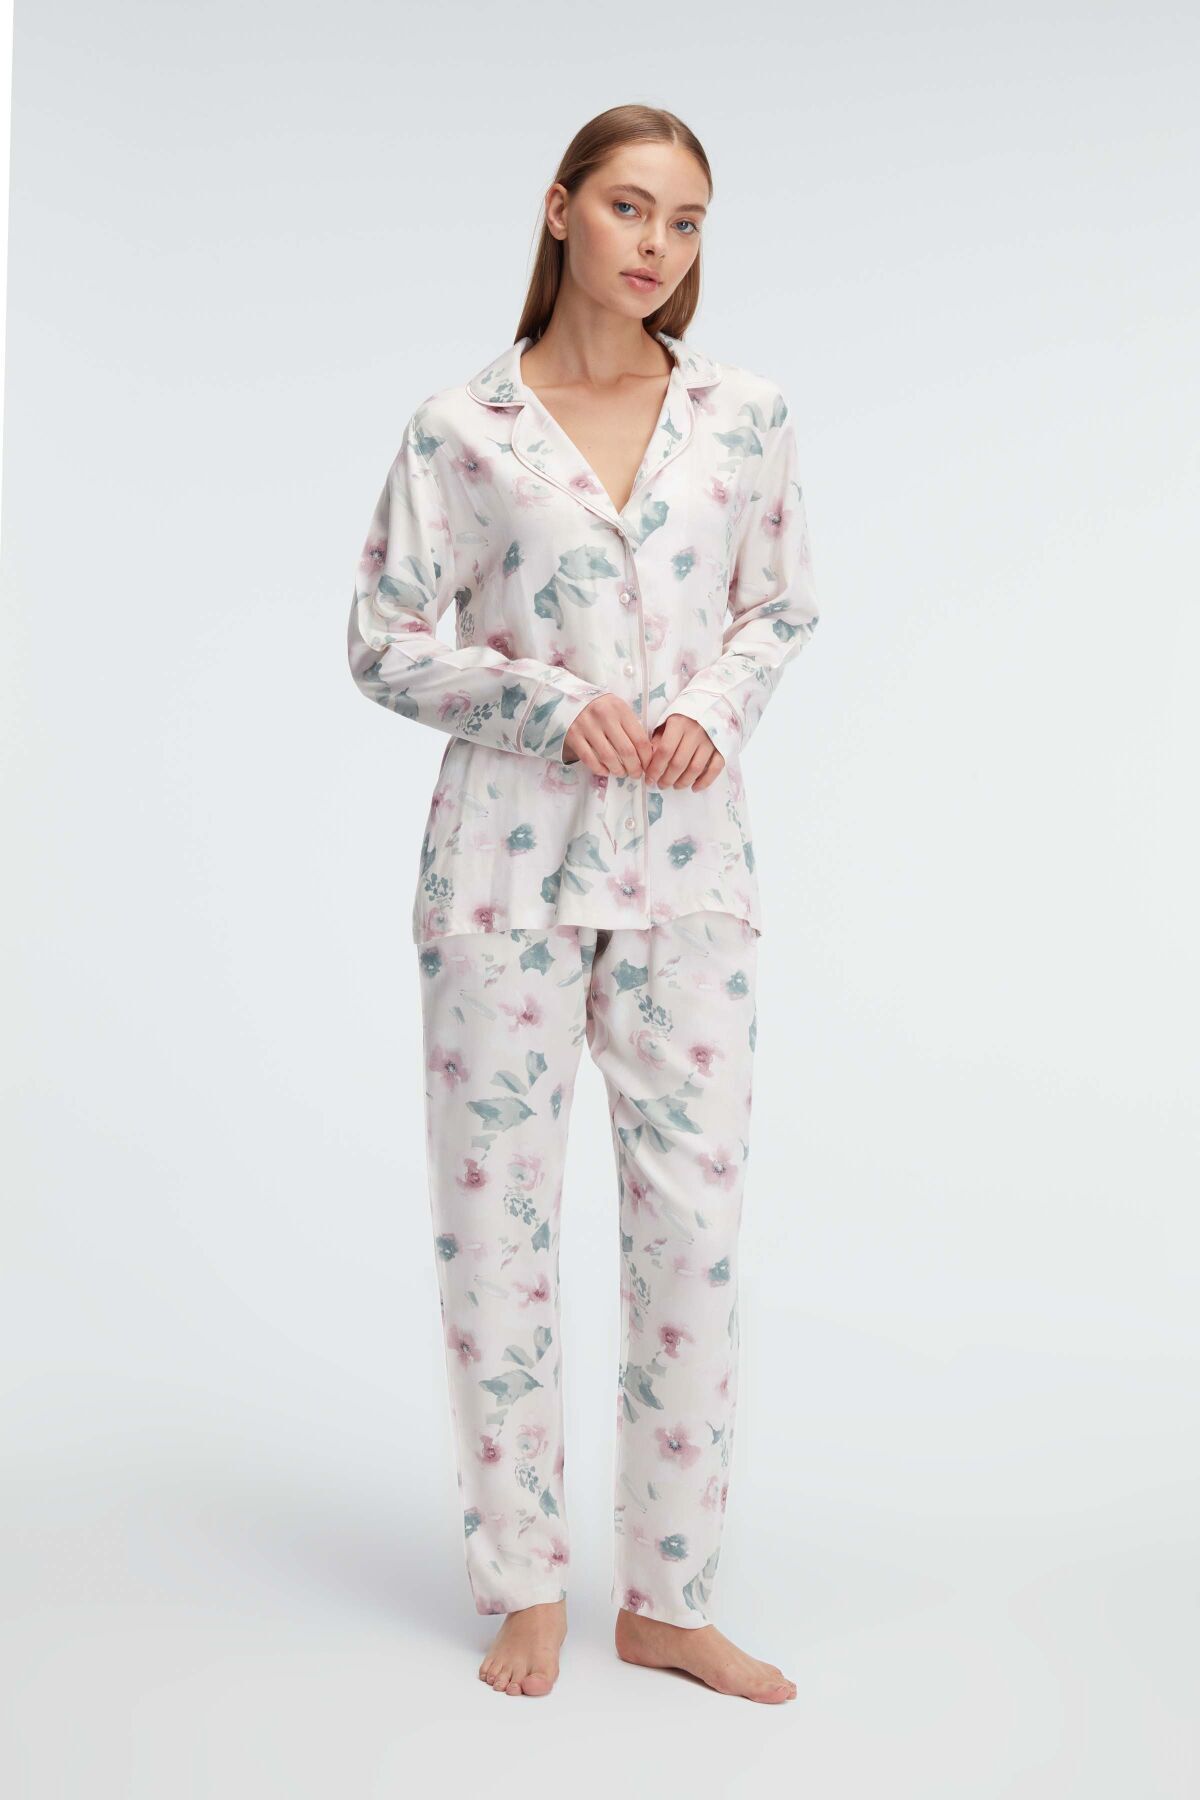 Anıl 11310 Ev Giyimi Kol V Yaka Kadın Viskon Çiçek Desenli Yazlık Dokuma Normal Bel Pijama Takımı